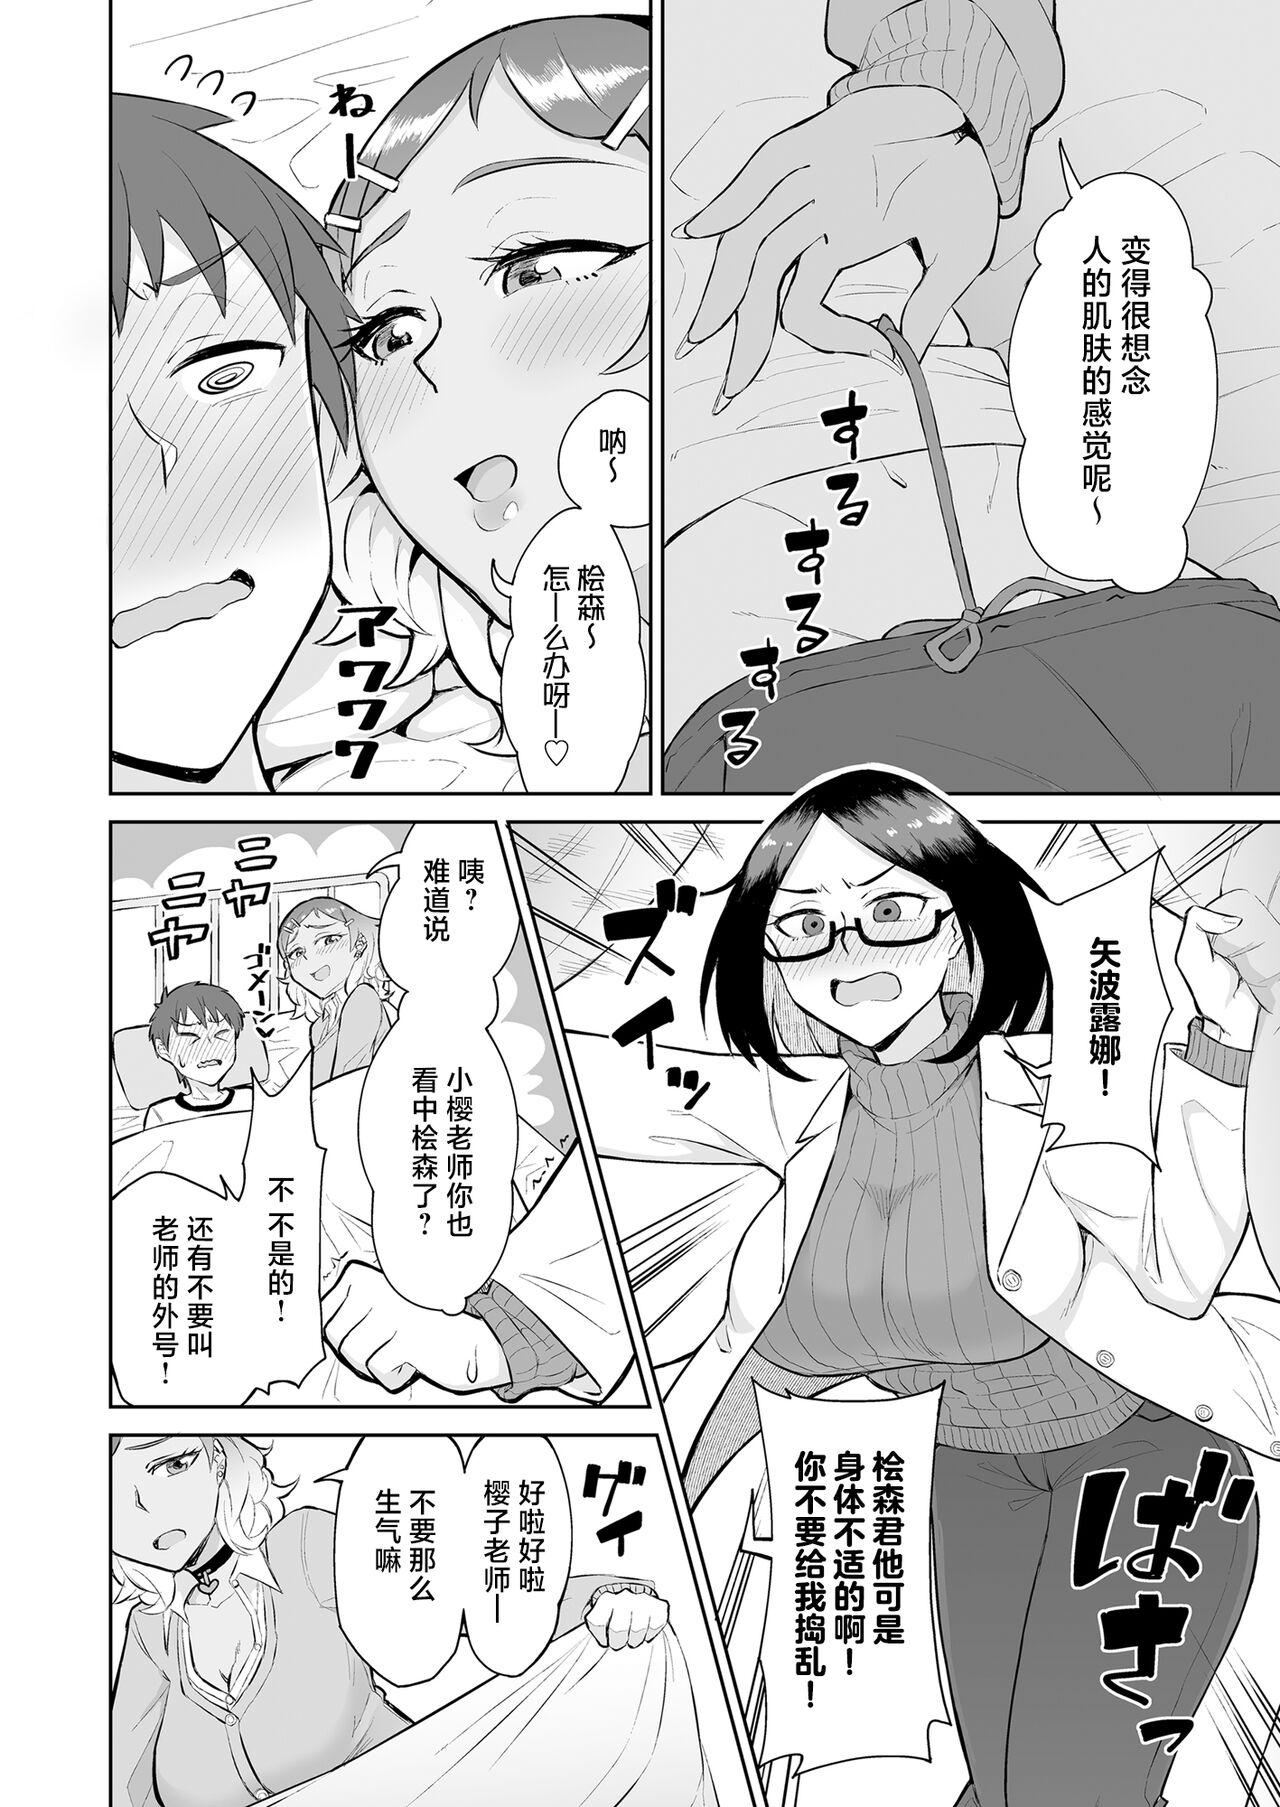 Gordibuena Bitch Gyaru to Shojo Sensei ni hoken-shitsu de shiboritora reru. - Original Bitch - Page 6